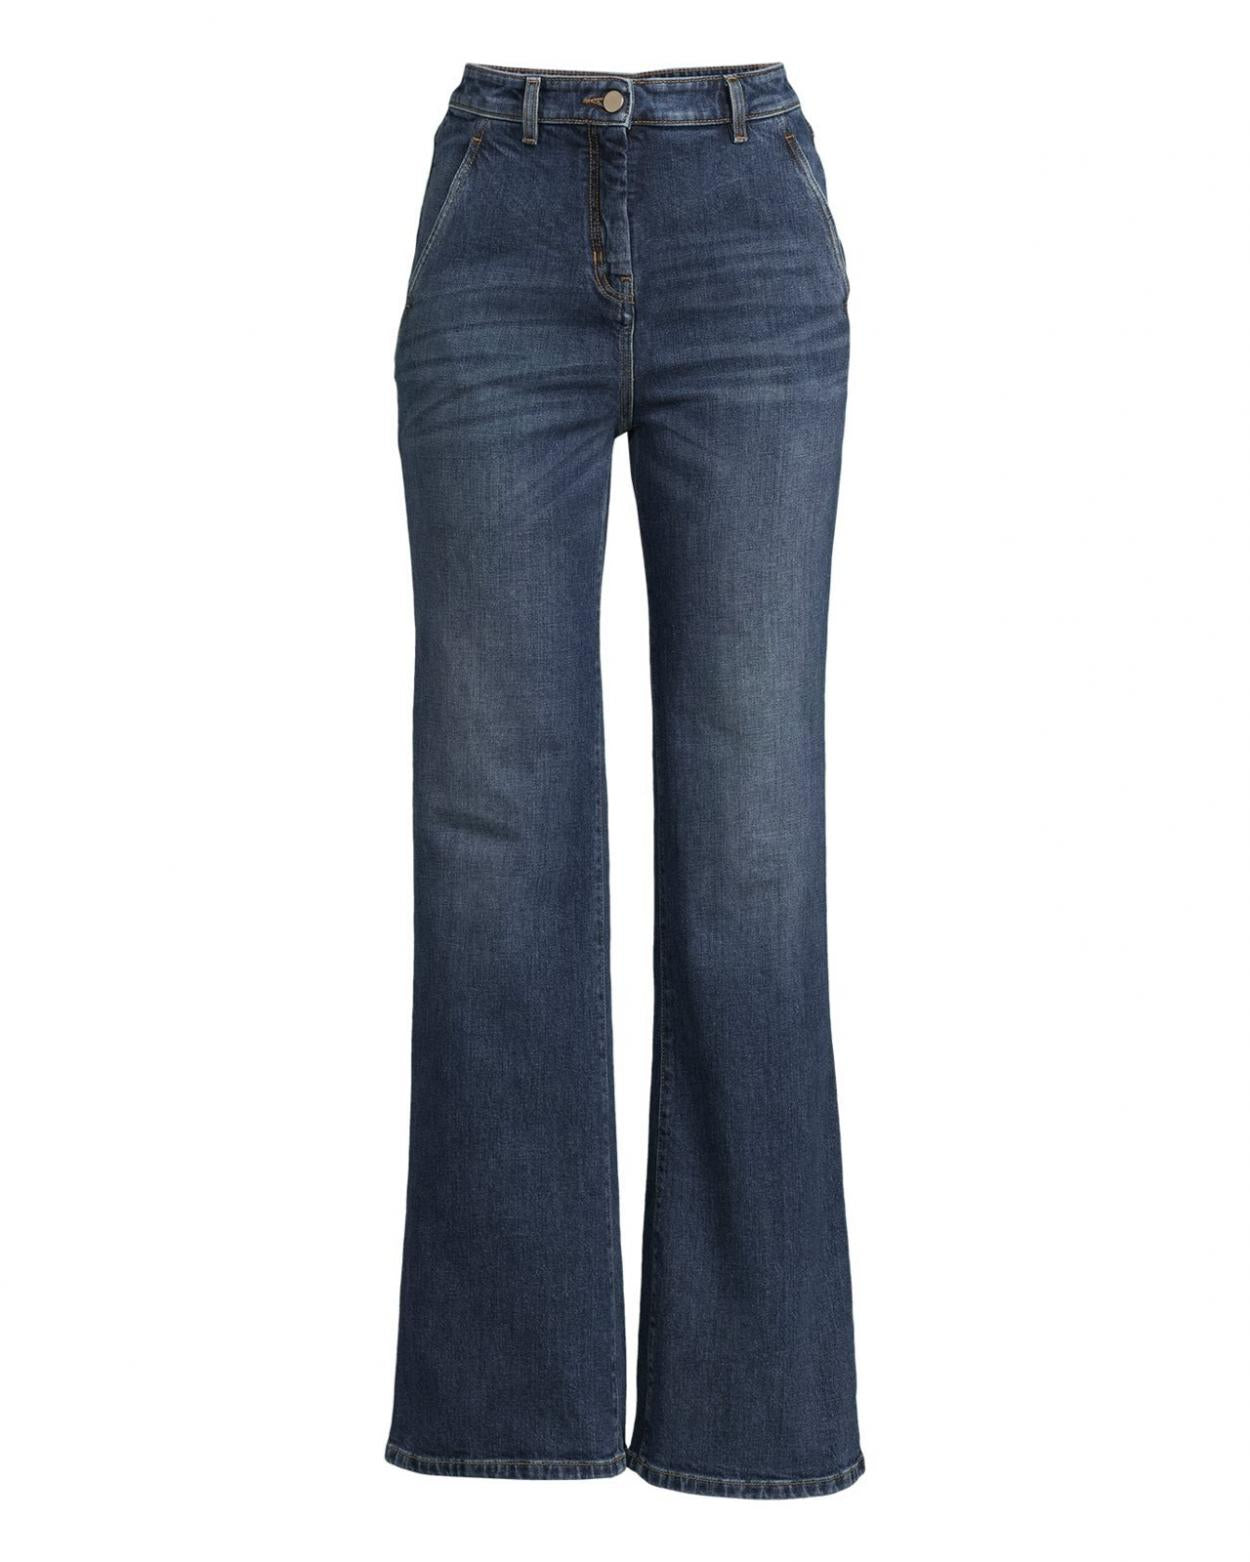 max-mara-studio-jeans-jeans-garian-mellanblc3a5-dam_1.jpg